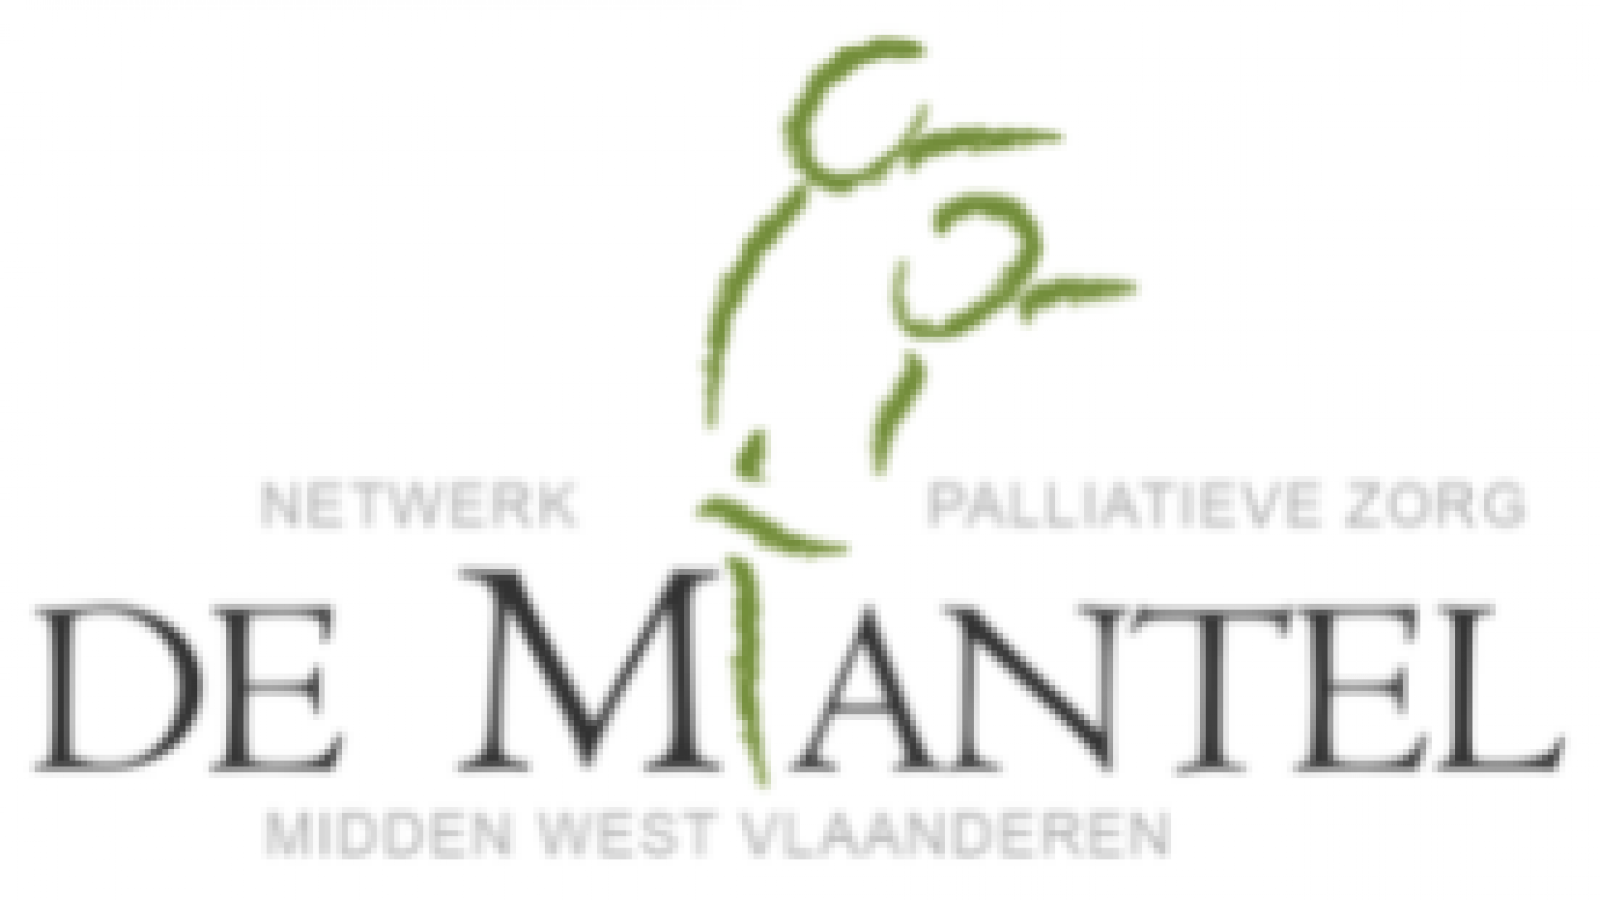 Familiezorg West Vlaanderen - Gesteunde werken - Lions Club Tielt